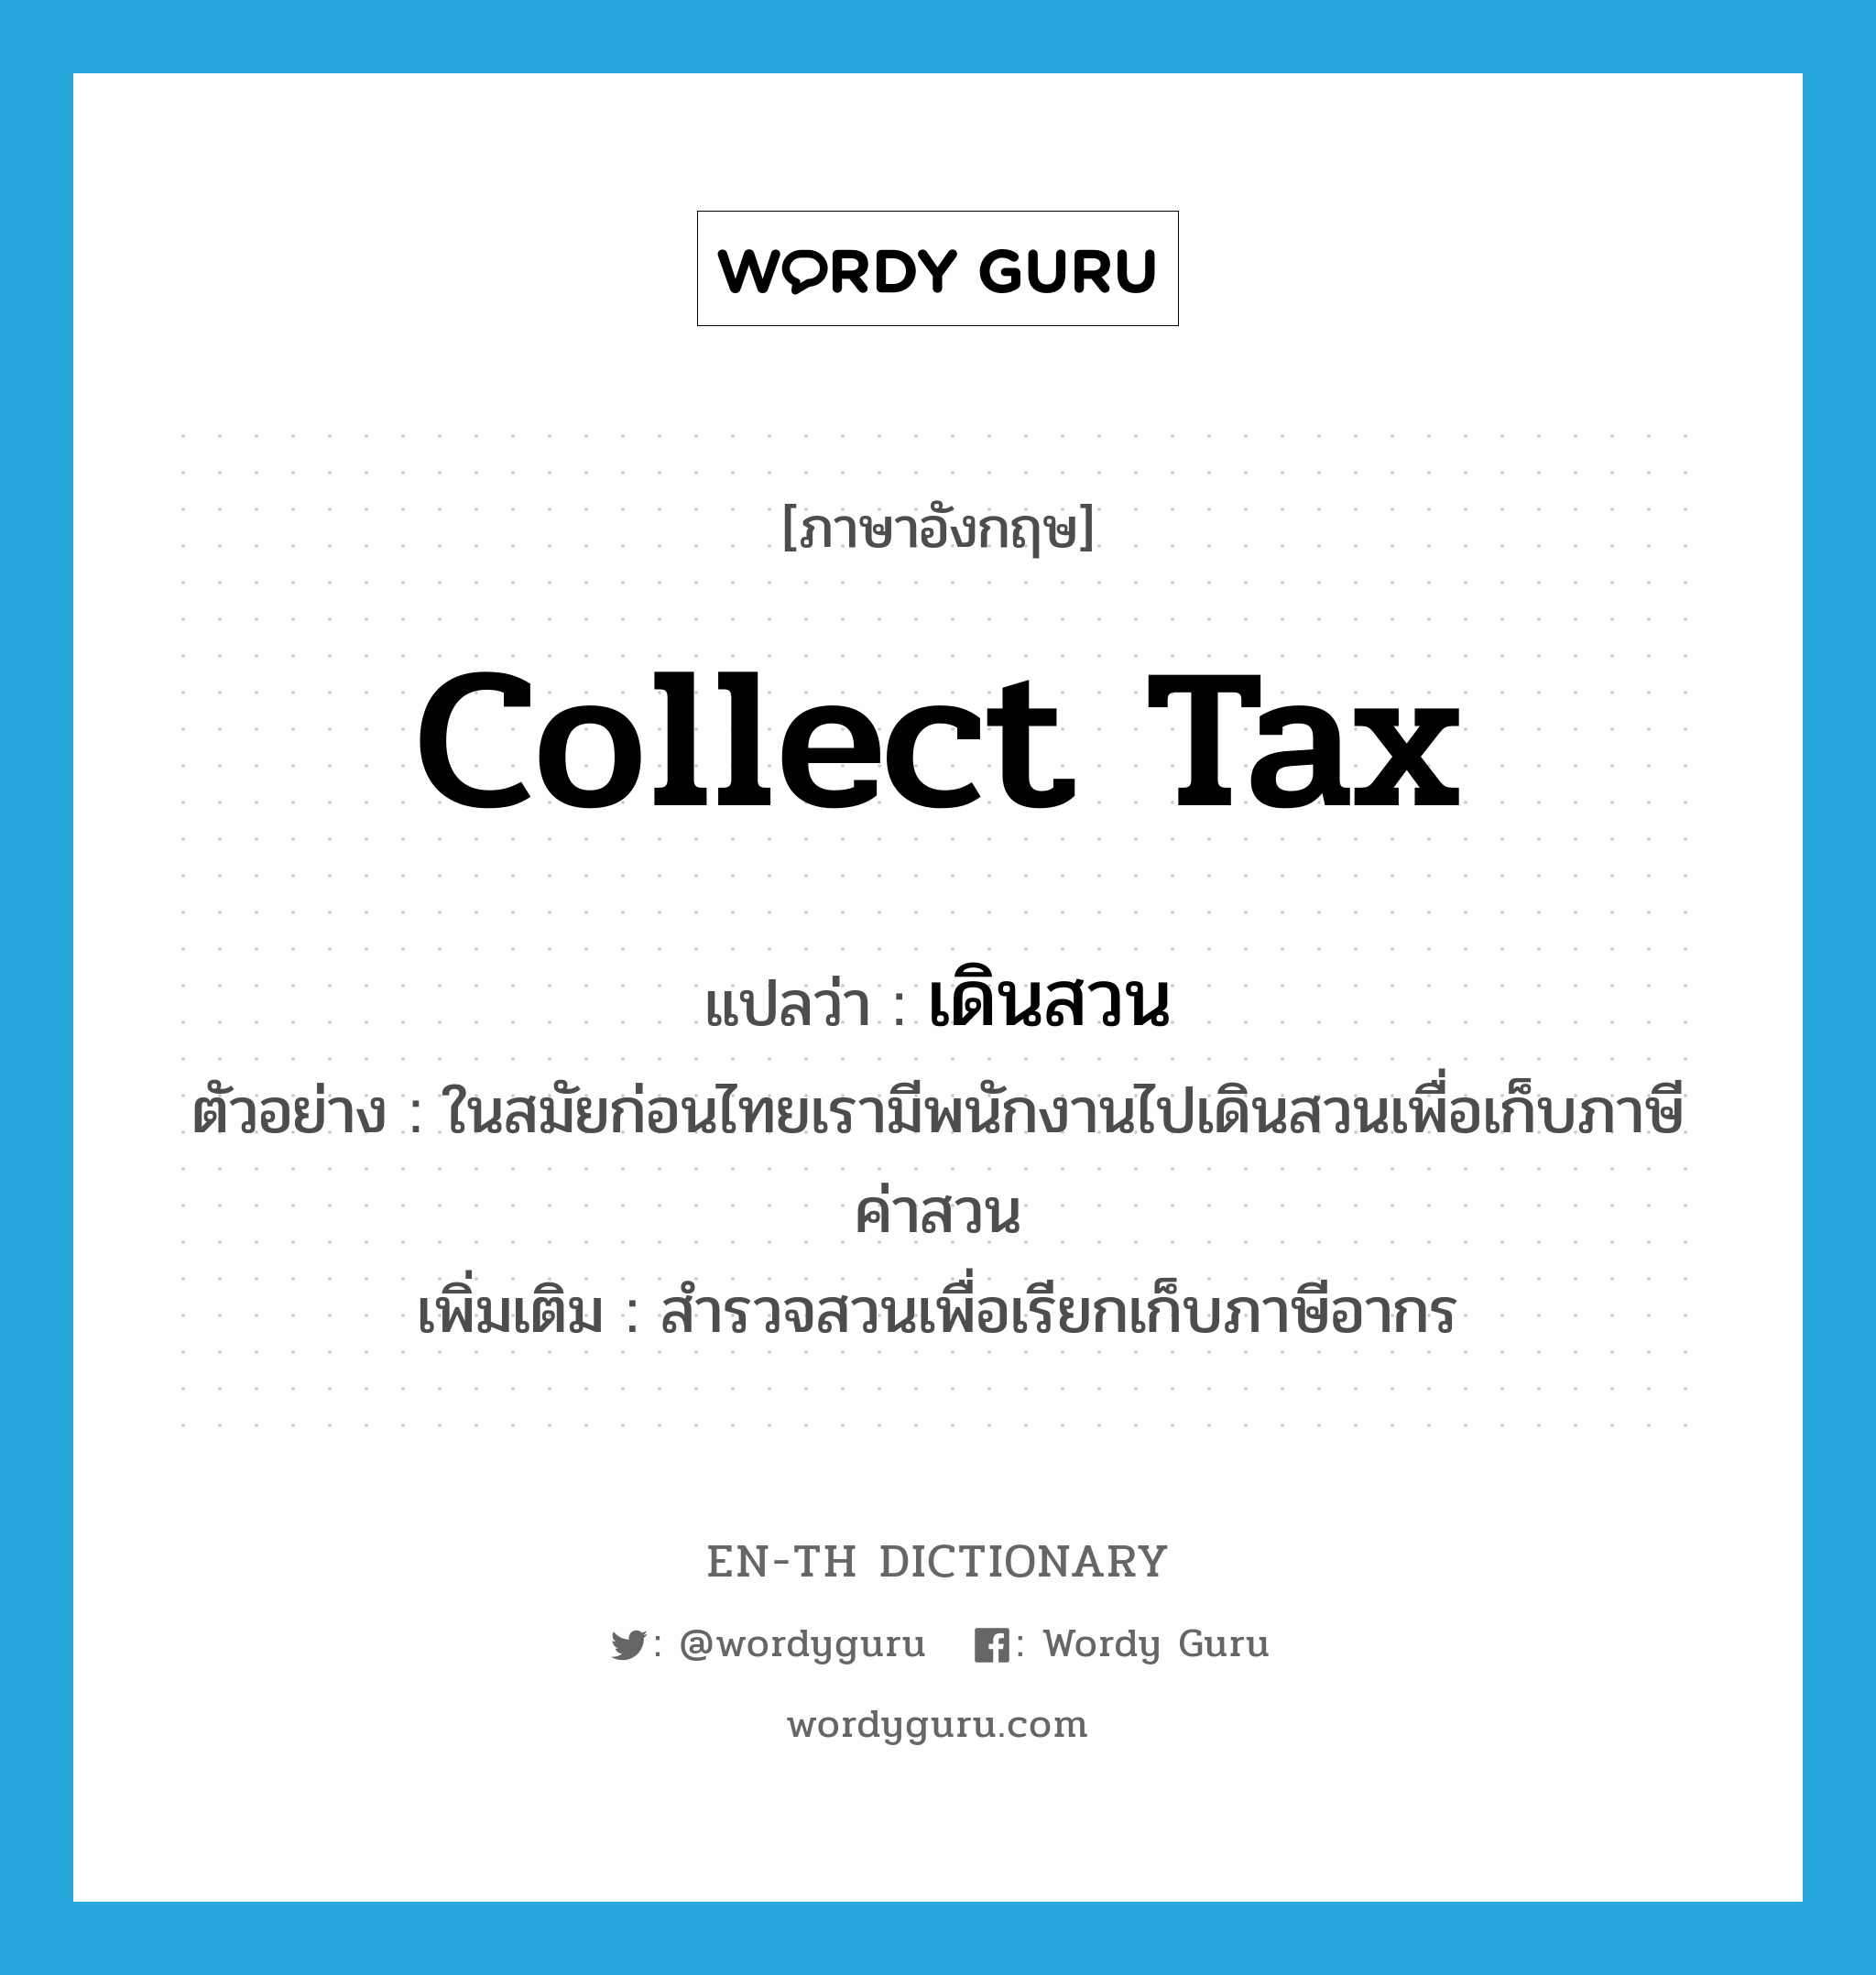 collect tax แปลว่า?, คำศัพท์ภาษาอังกฤษ collect tax แปลว่า เดินสวน ประเภท V ตัวอย่าง ในสมัยก่อนไทยเรามีพนักงานไปเดินสวนเพื่อเก็บภาษีค่าสวน เพิ่มเติม สำรวจสวนเพื่อเรียกเก็บภาษีอากร หมวด V